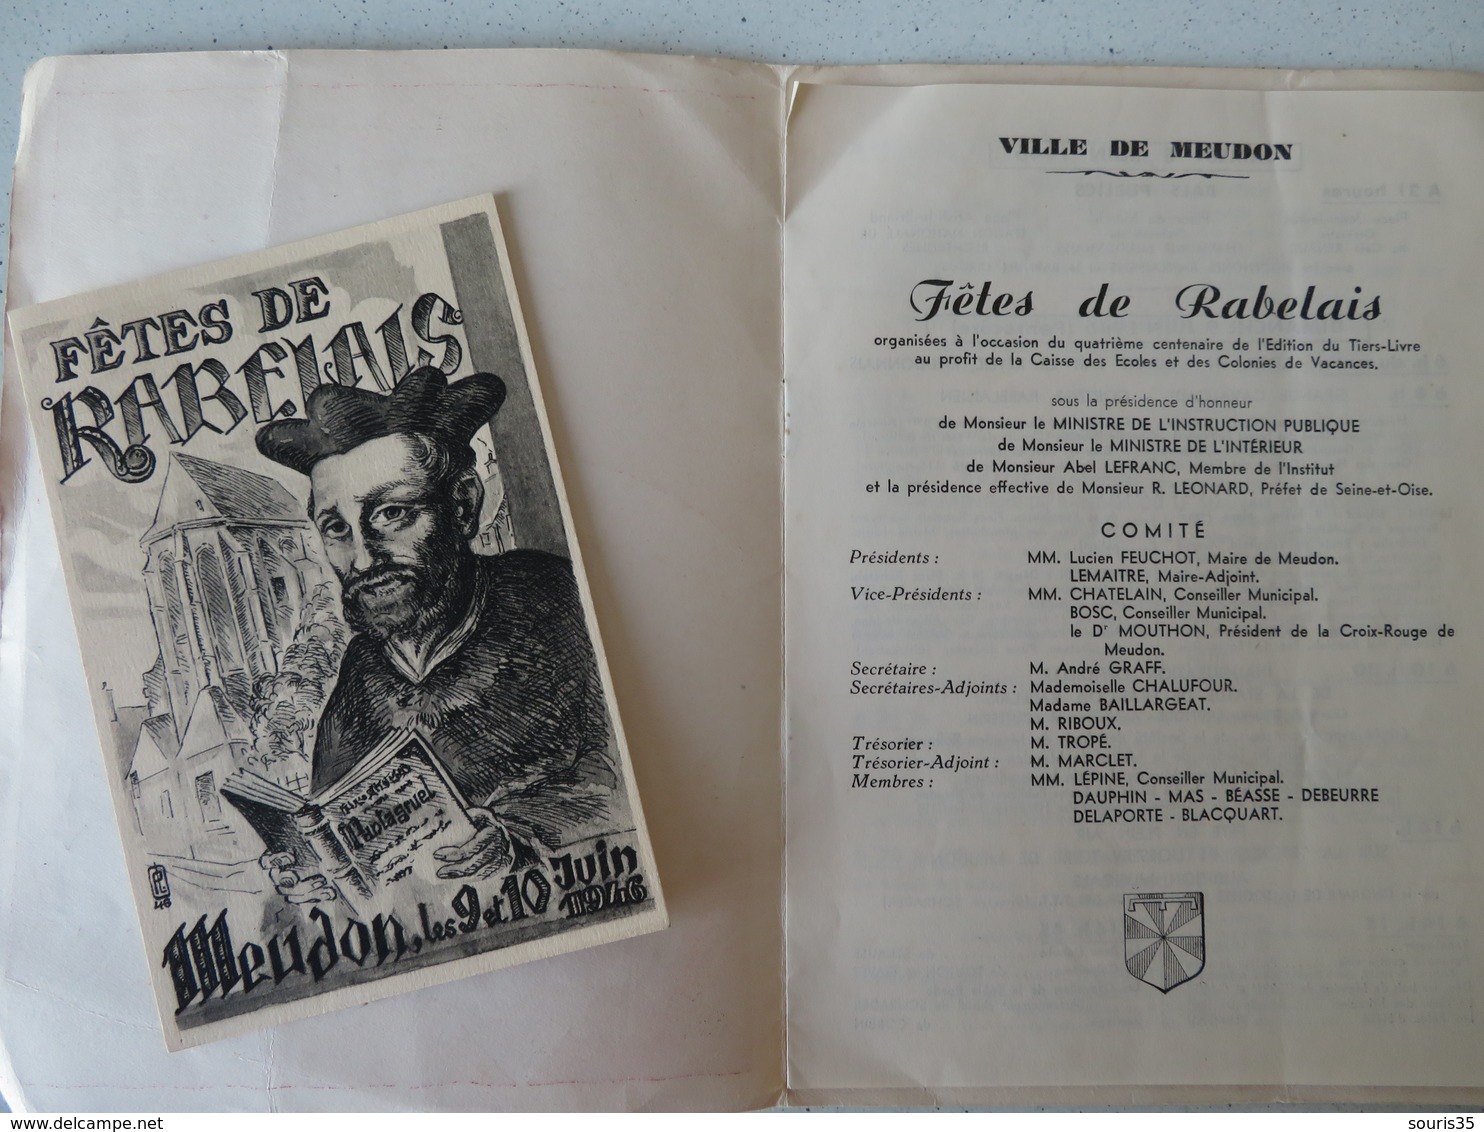 92 MEUDON 9 & 10 Juin 1946 Fêtes De Rabelais Programme Dessin Illustateur Dubout + 1 Carte - Programmes